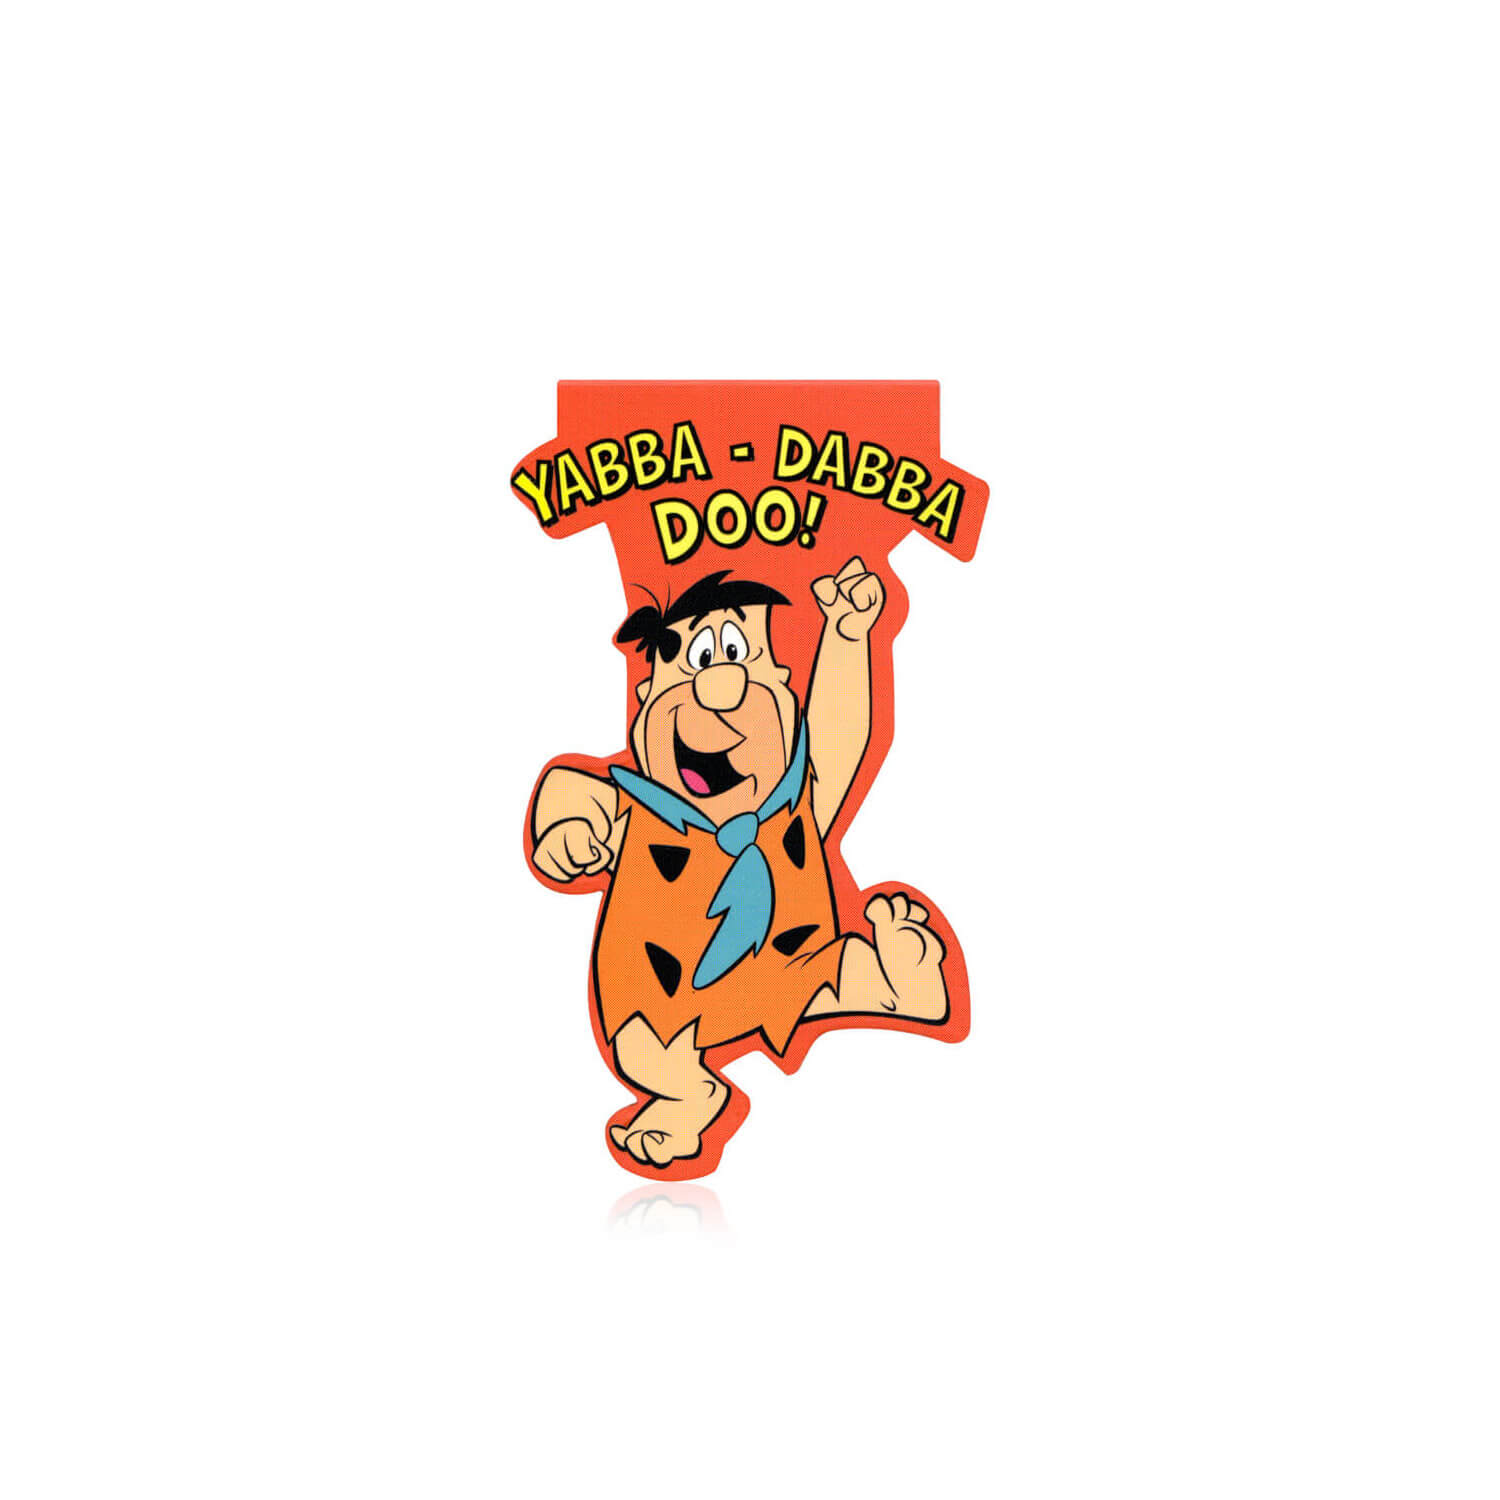 The Flintstones Fred Çakmaktaş Mıknatıslı Kitap Ayracı